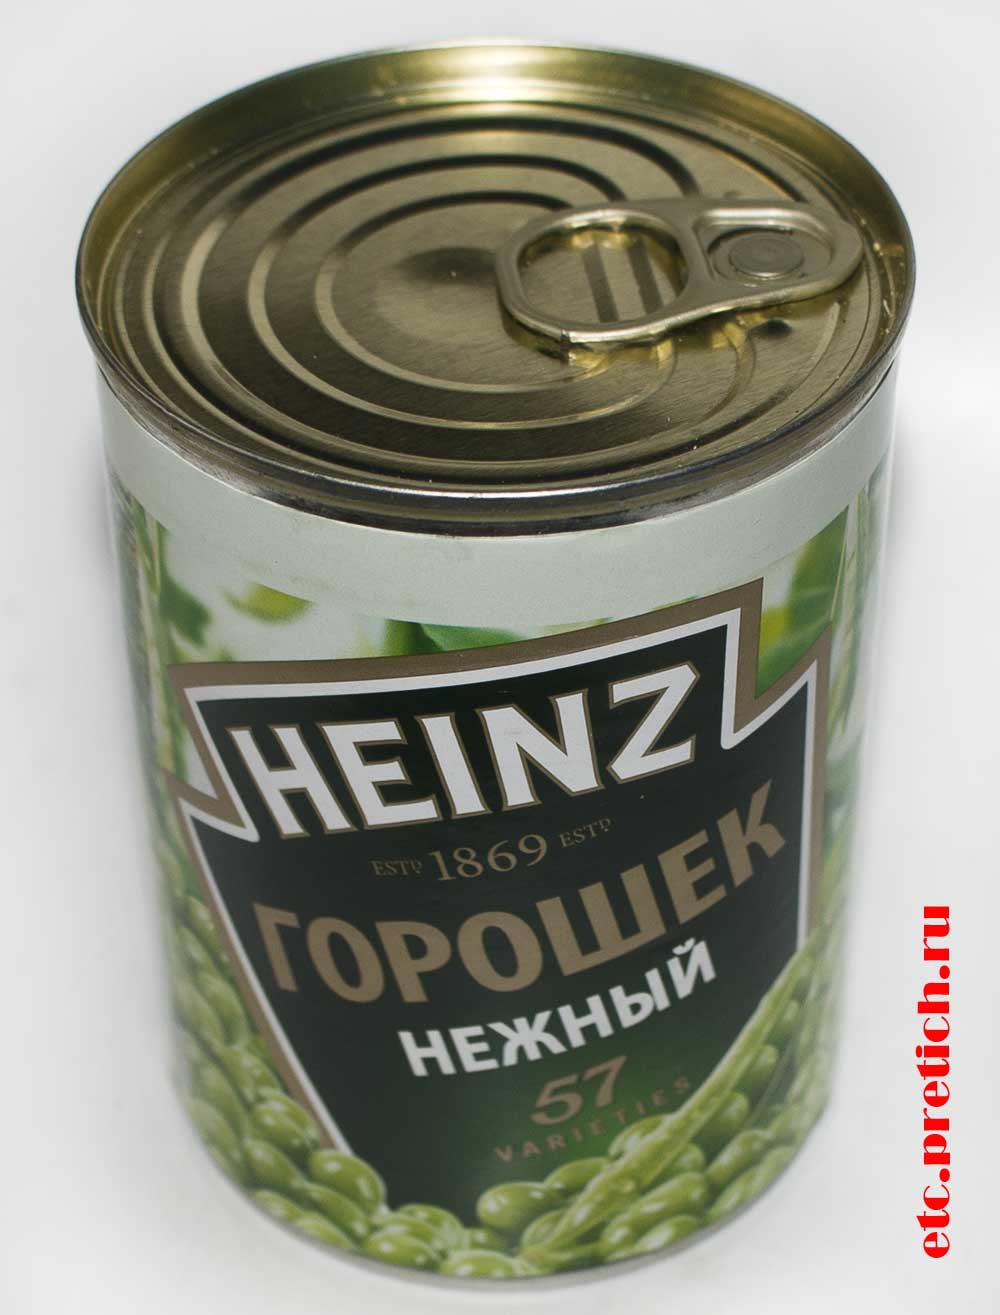 Отзыв на HEINZ горошек зеленый нежный консервированный из Польши